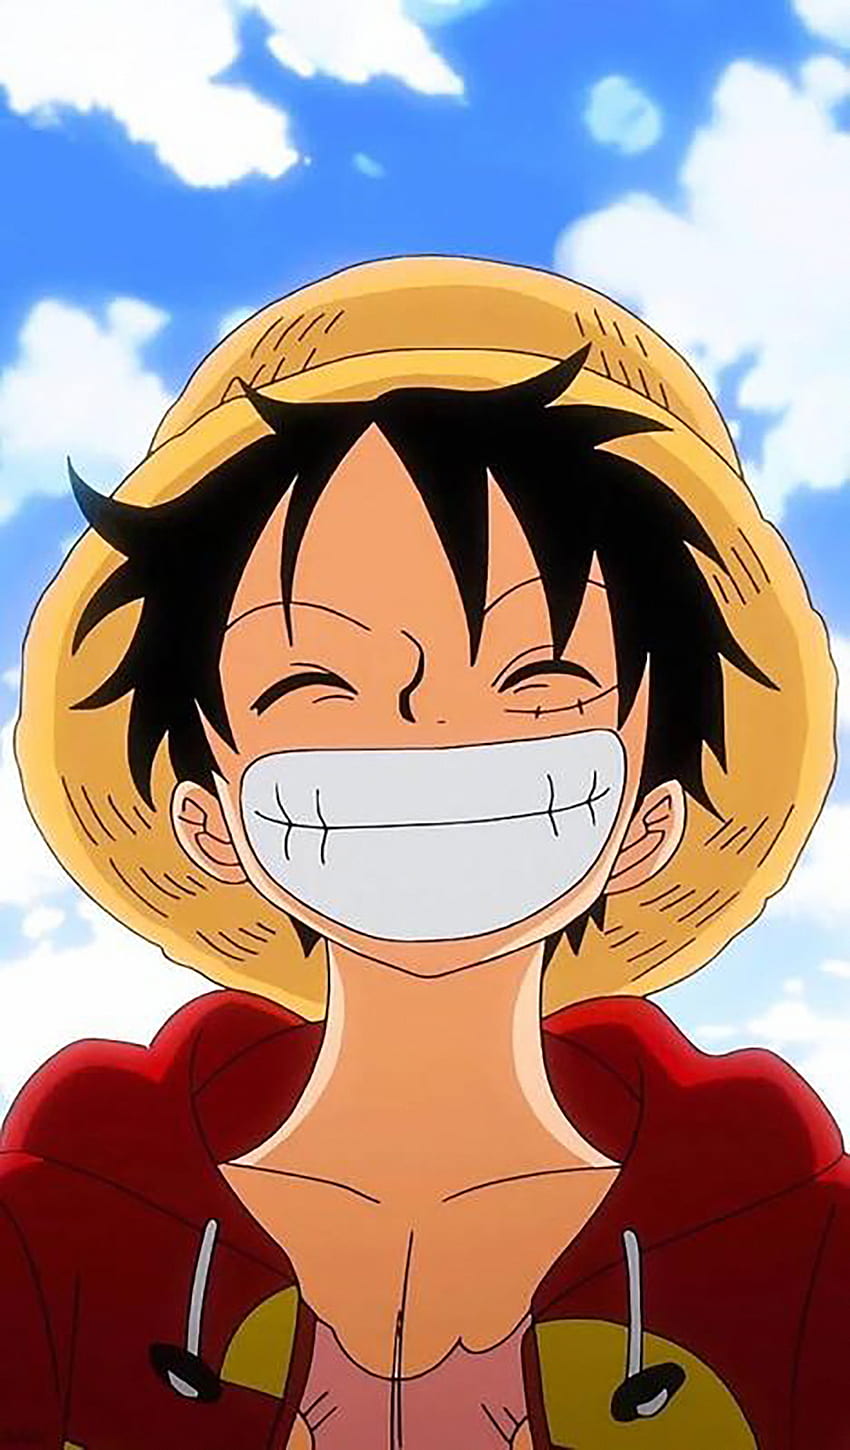 Masque 'Luffy Smiling - One Piece' por Lilzer99 em 2020. Anime , Anime, Mangá One Piece, Luffy Smile Papel de parede de celular HD